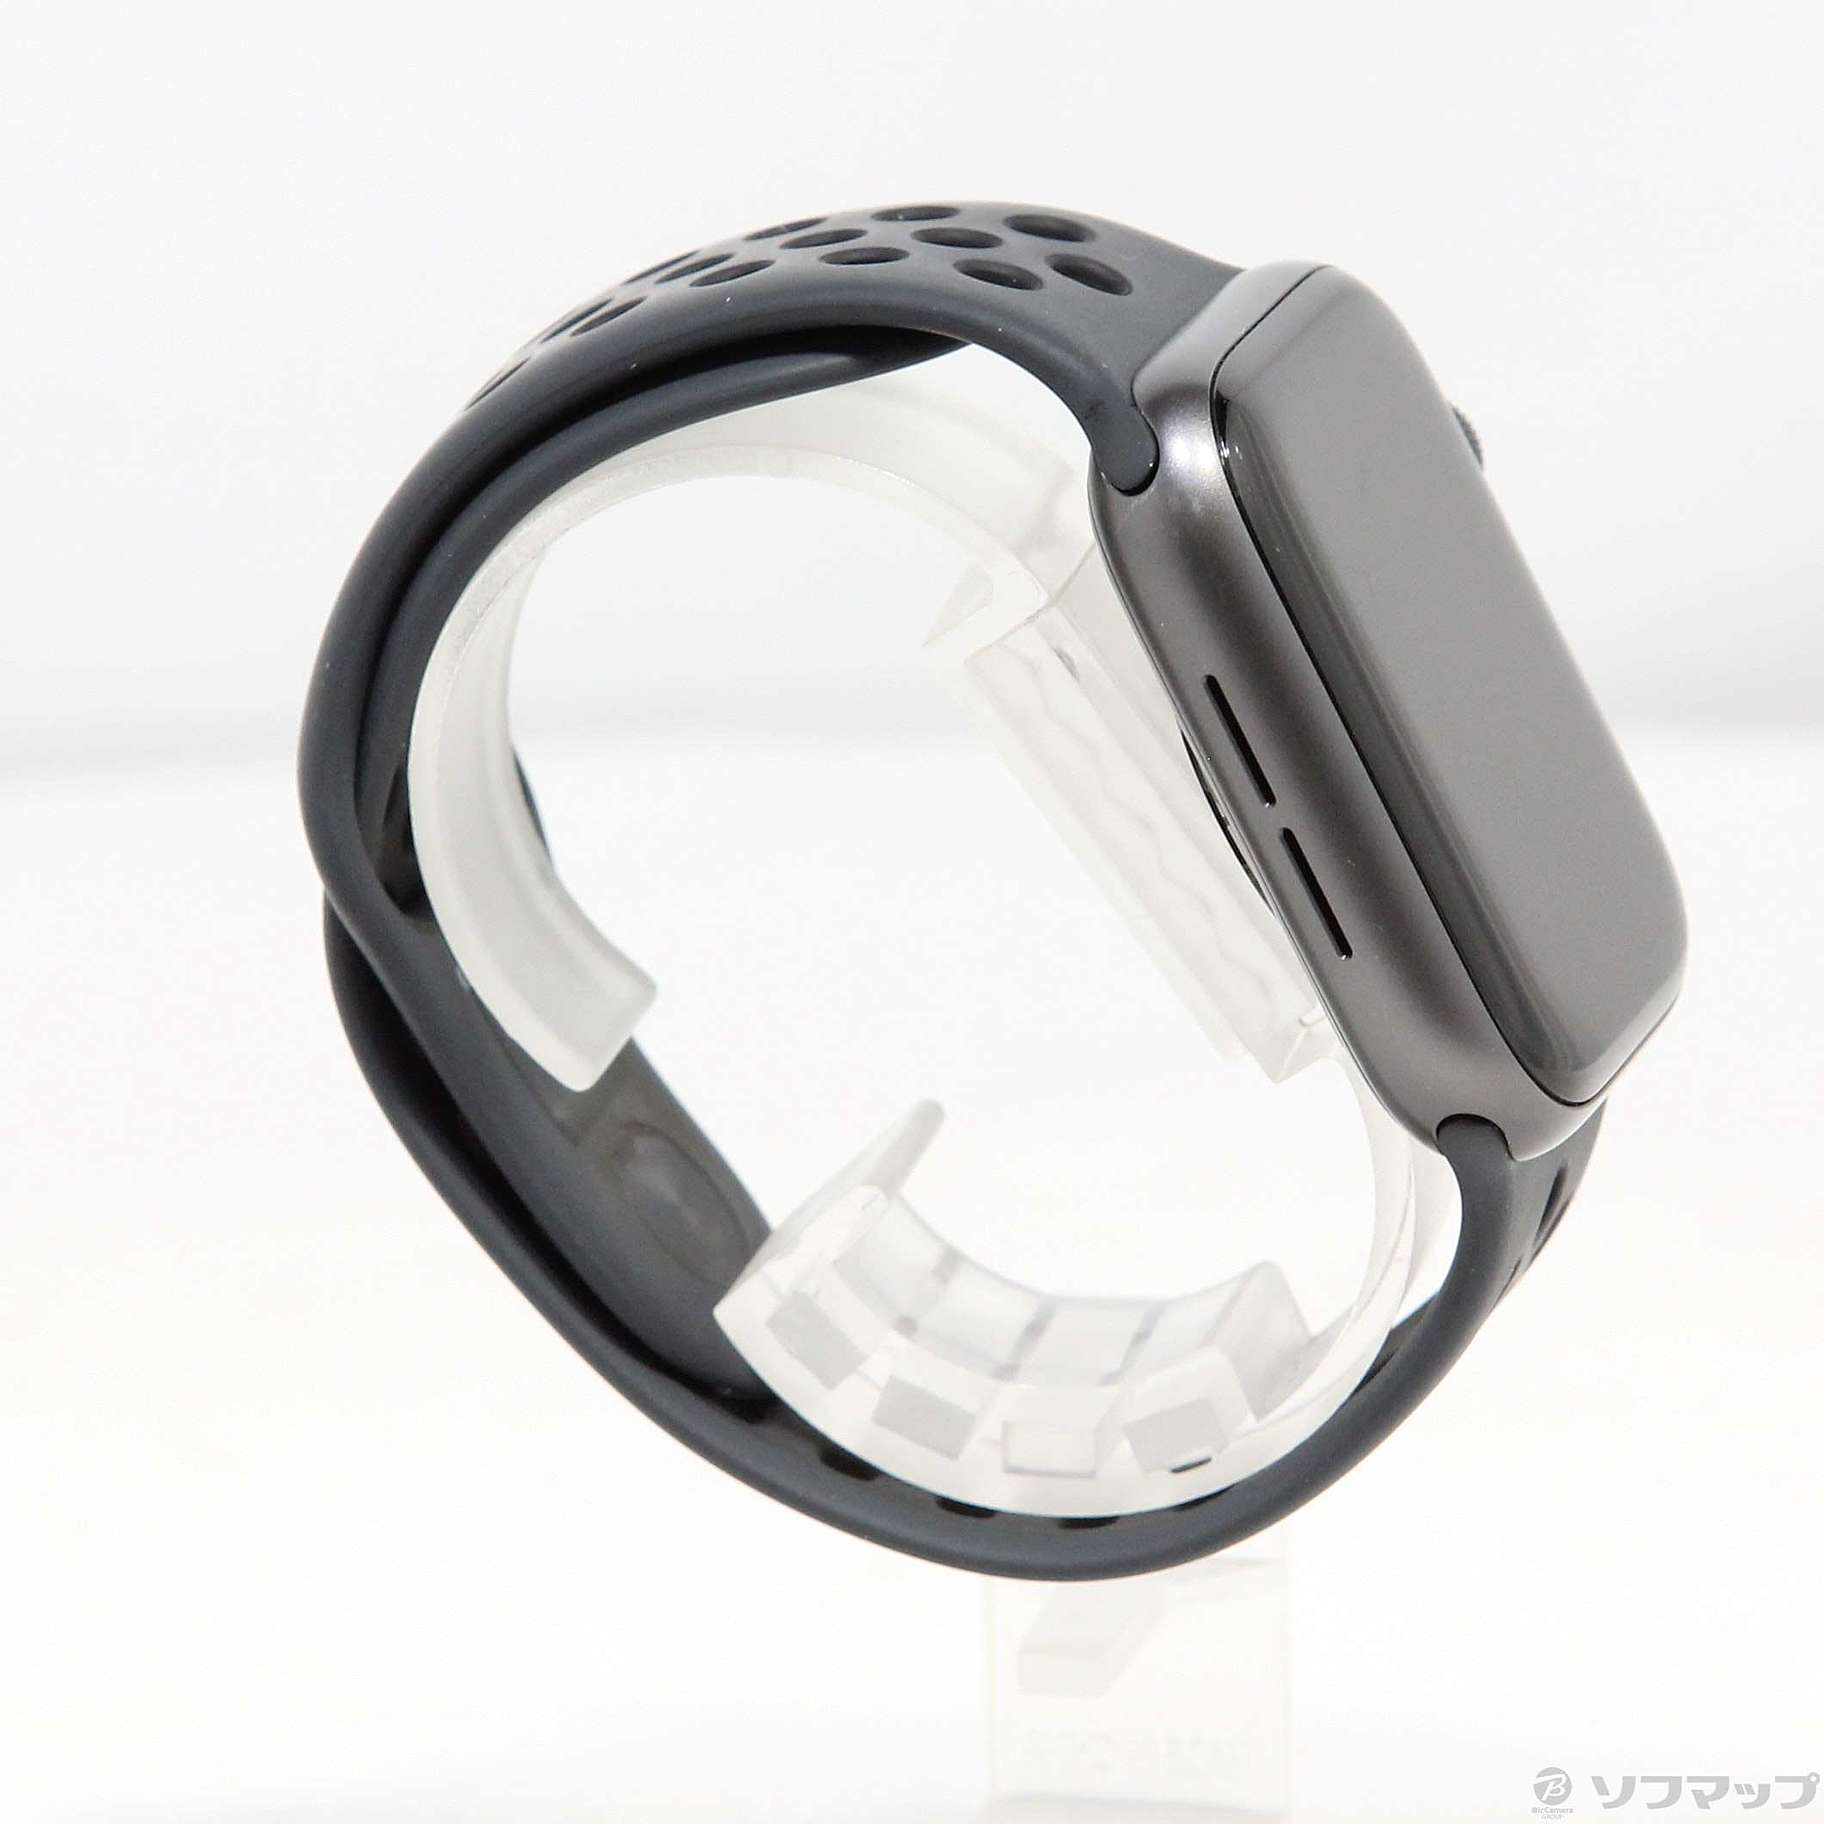 中古】Apple Watch Series 5 Nike GPS 44mm スペースグレイ 